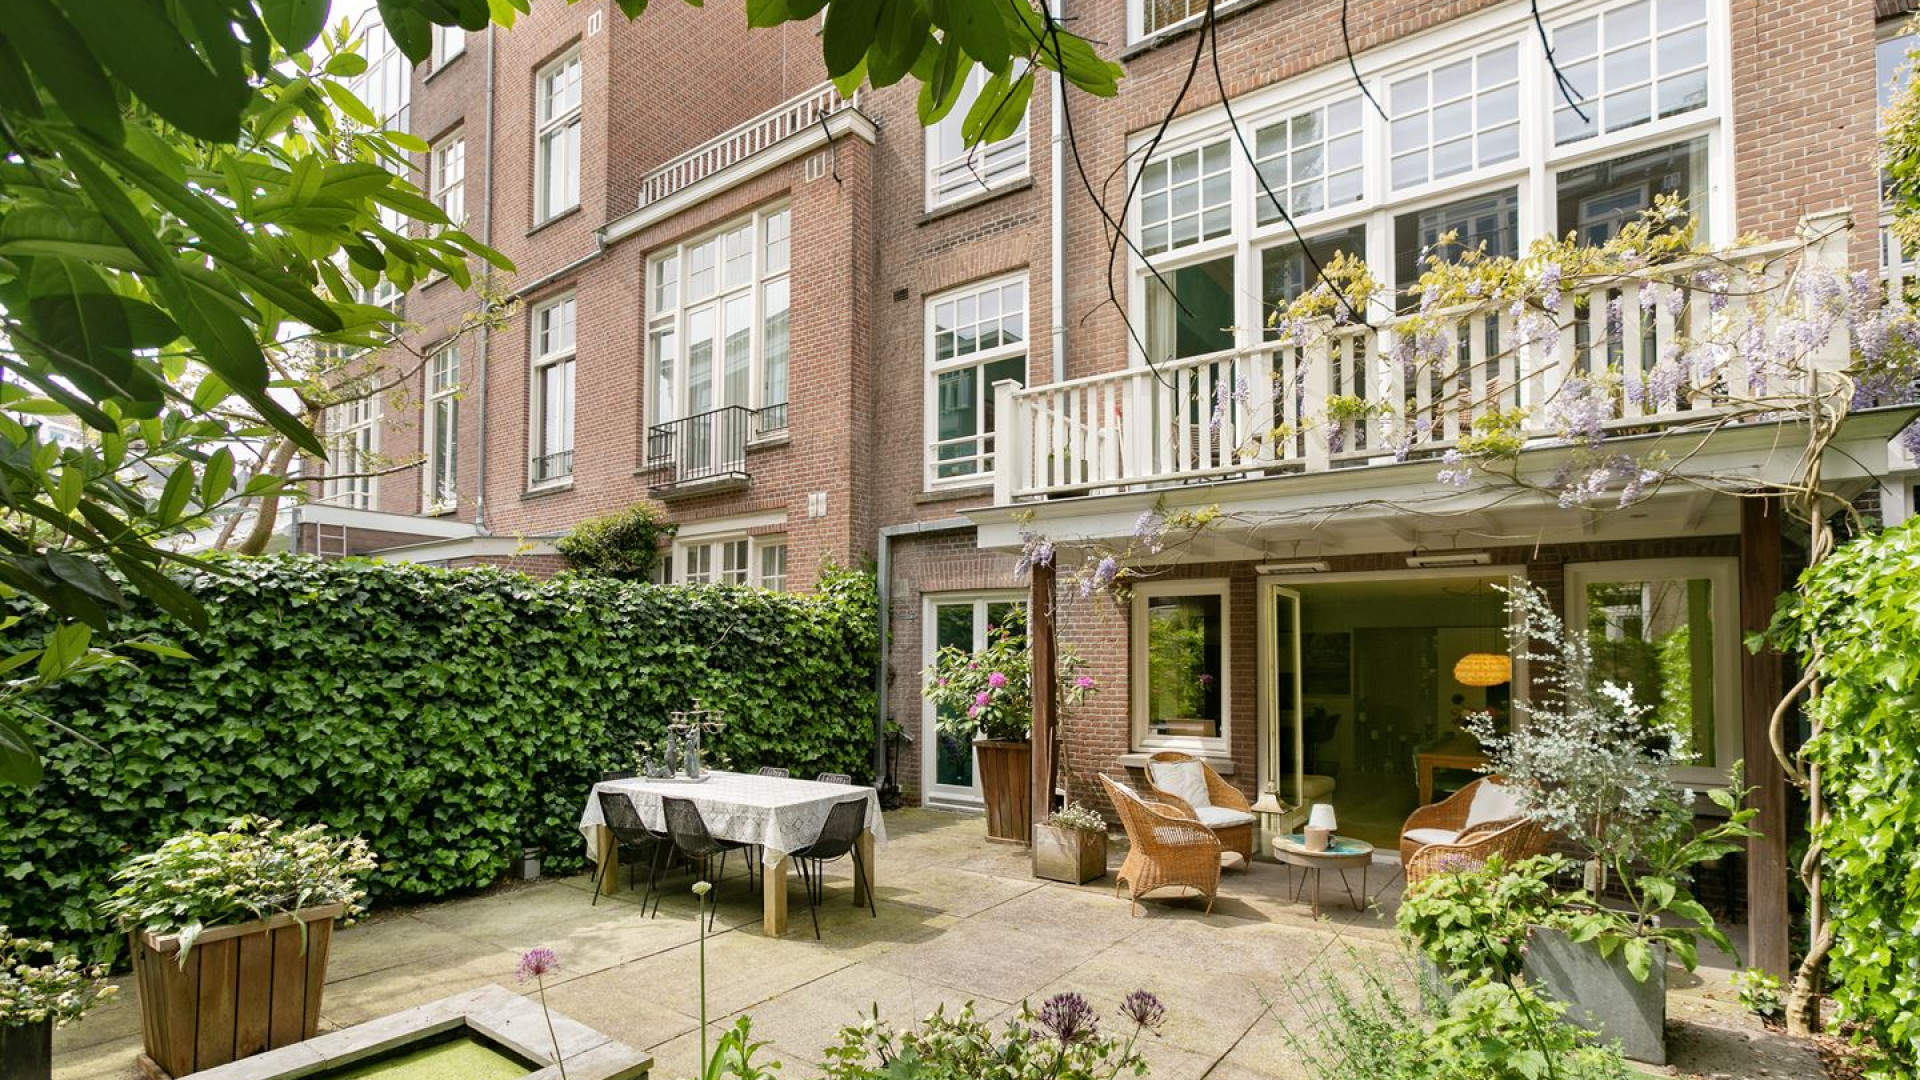 Ivo Niehe geeft forse korting op zijn miljoenenpand in Amsterdam Zuid. Zie foto's 4